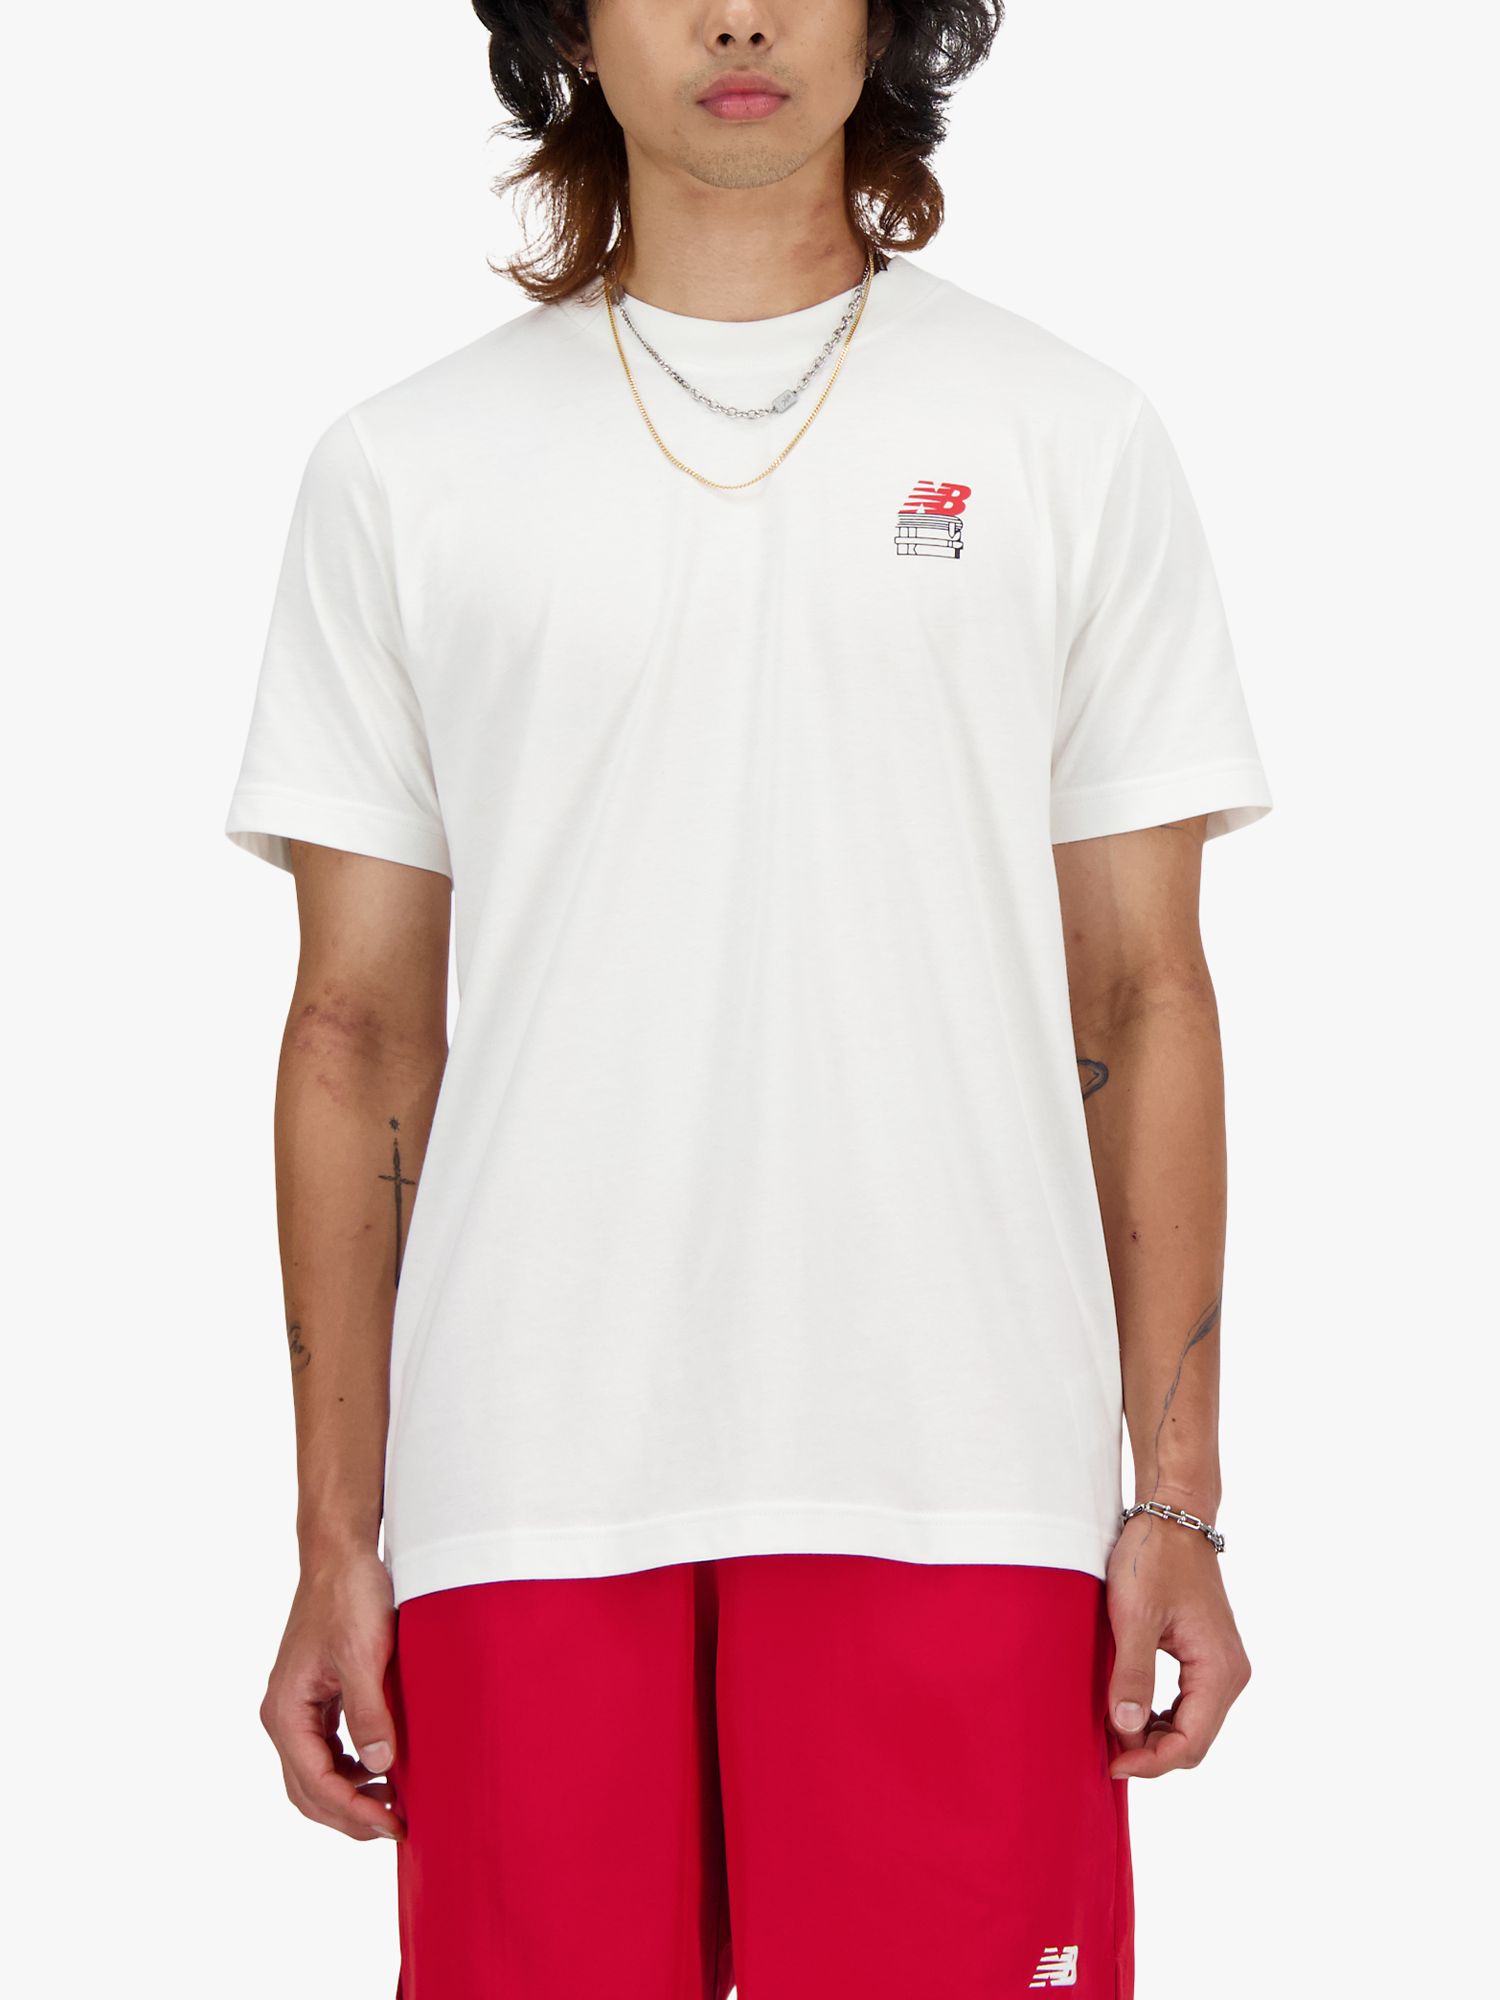 New Balance Graphic T-Shirt, White, S